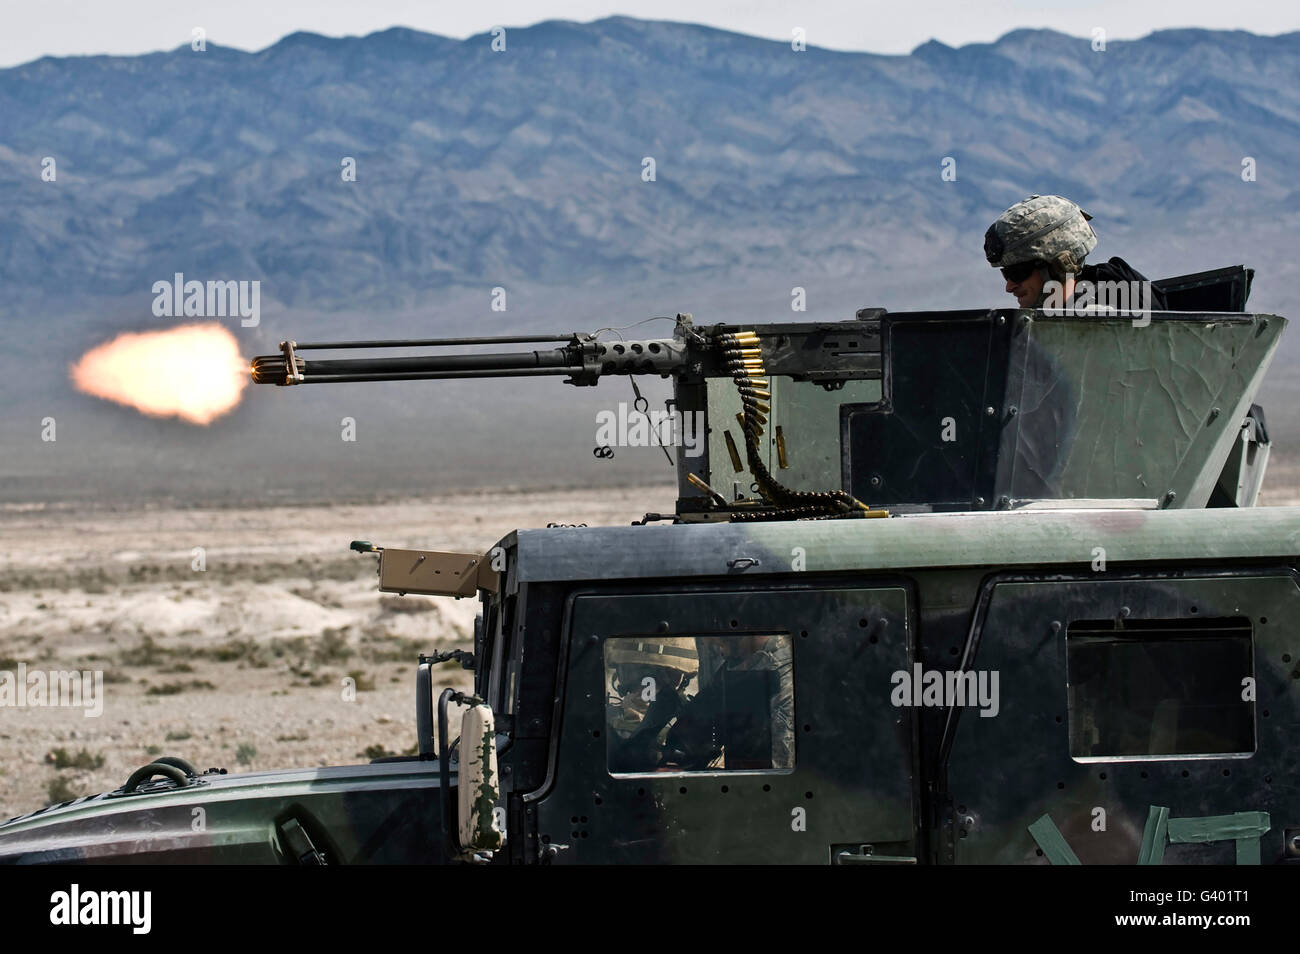 Airman fires a .50 caliber heavy machine gun. Stock Photo